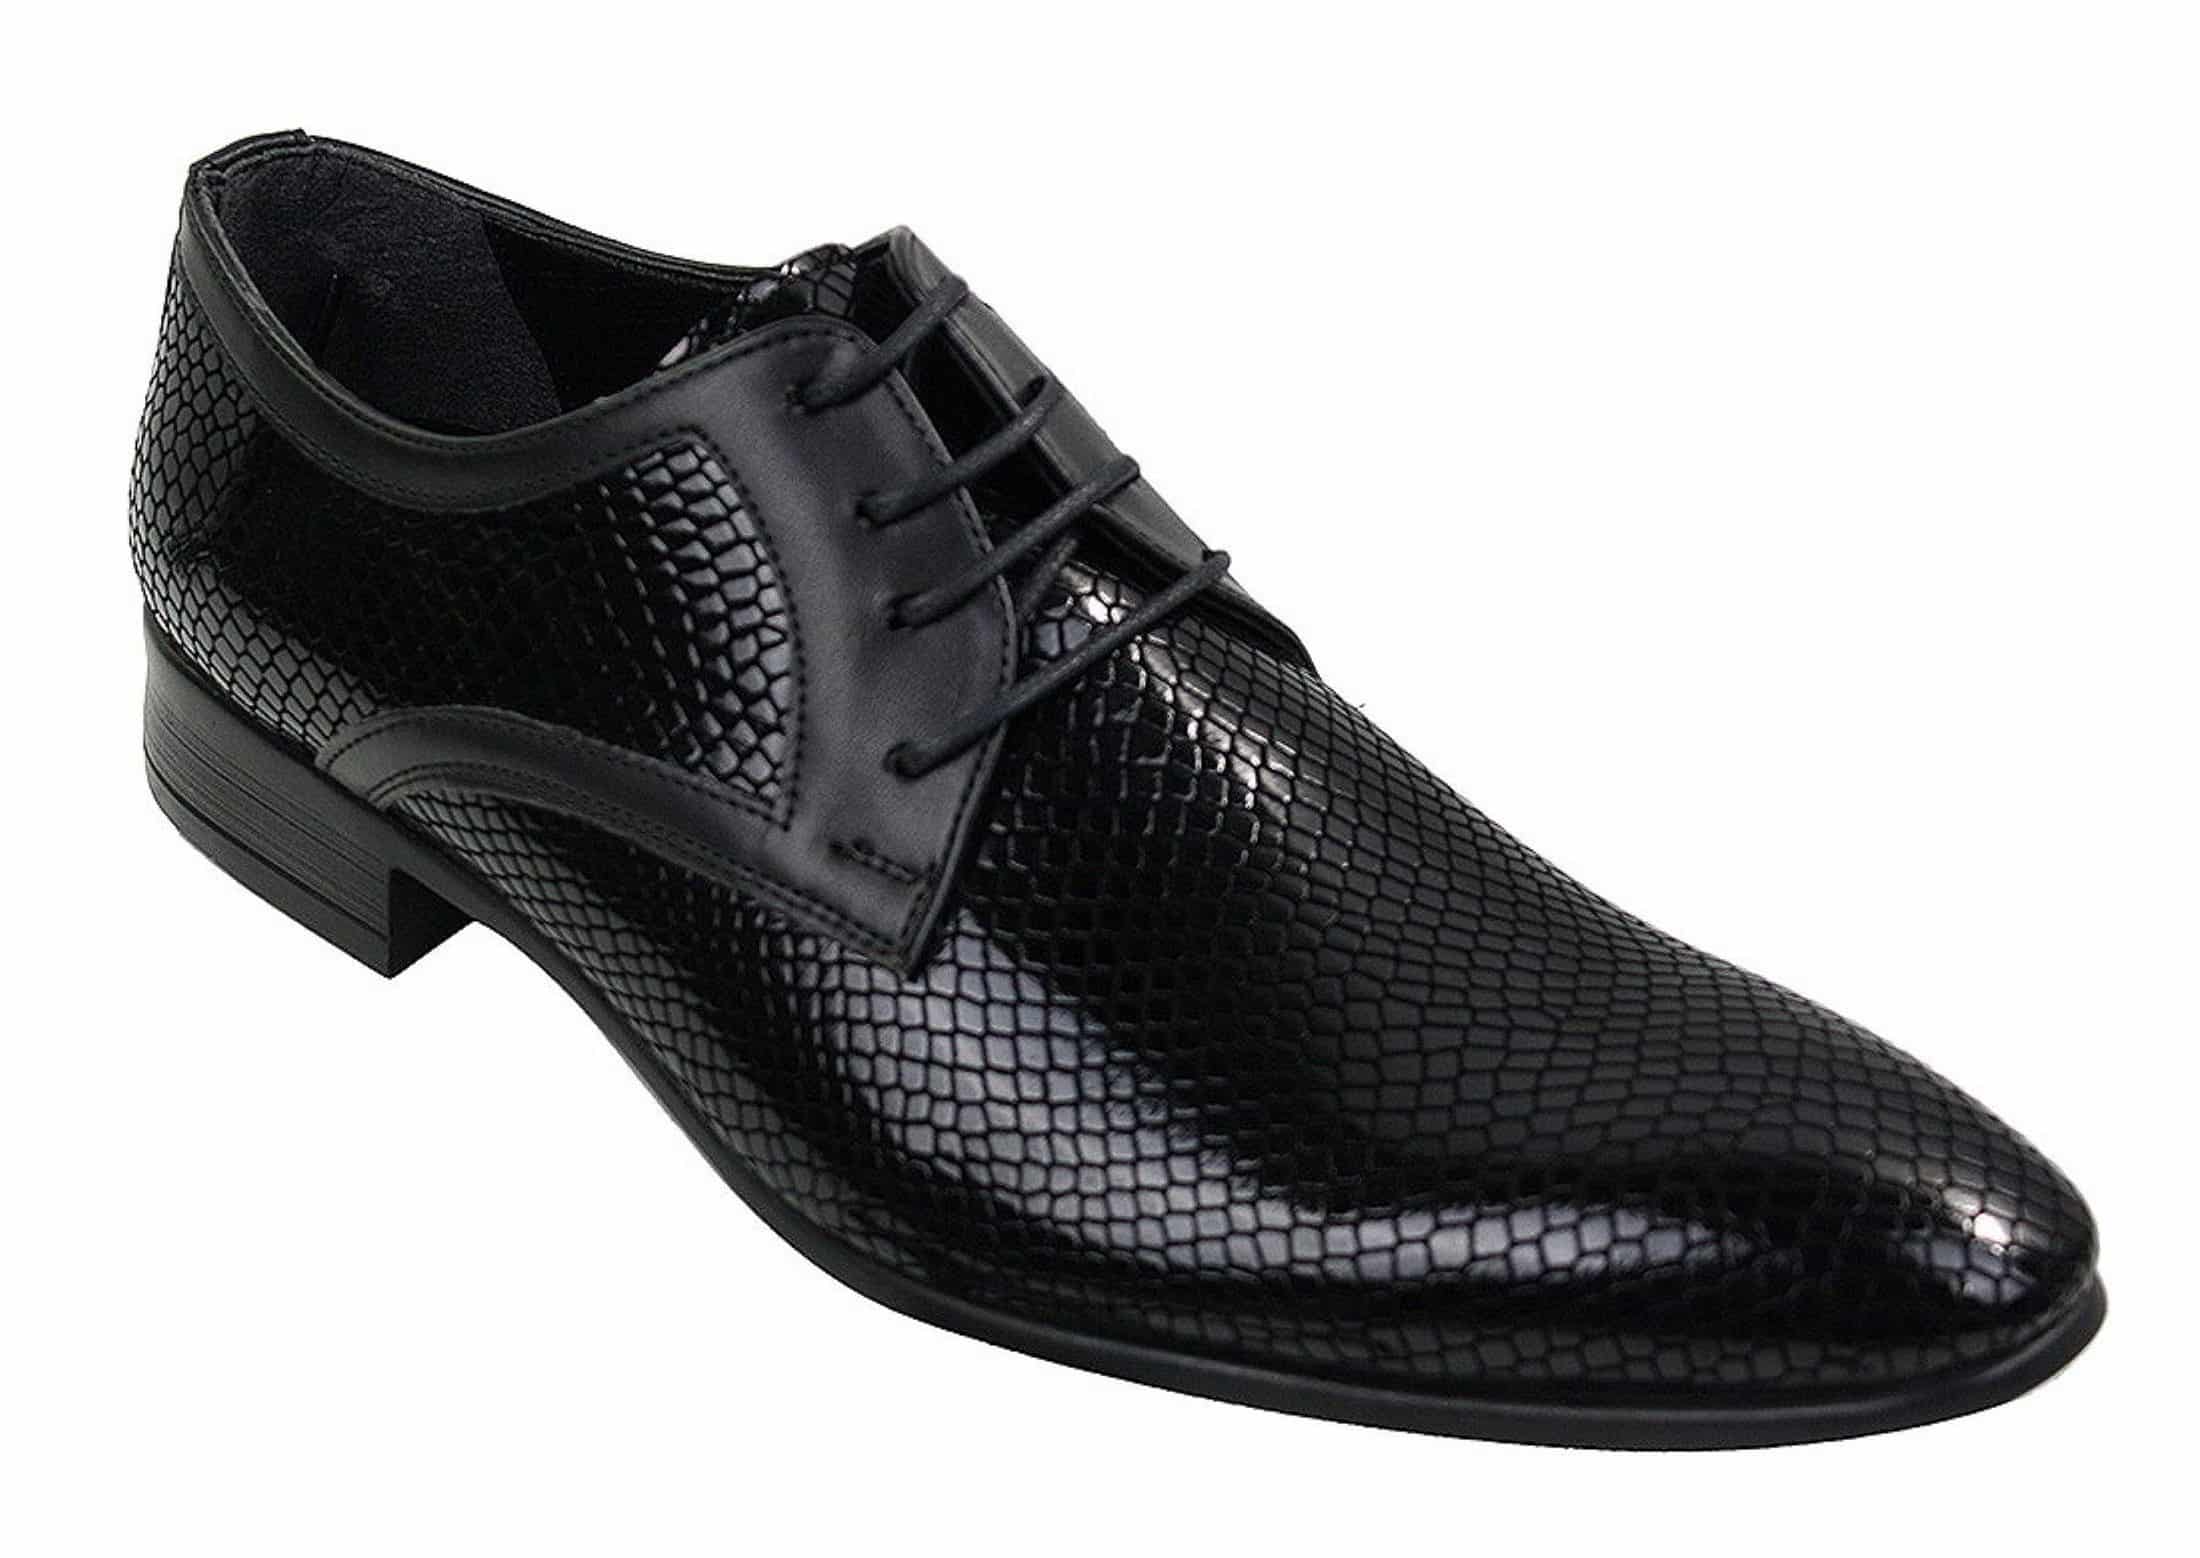 Buy Men's Smart Shoes, Formal Shoes for Men